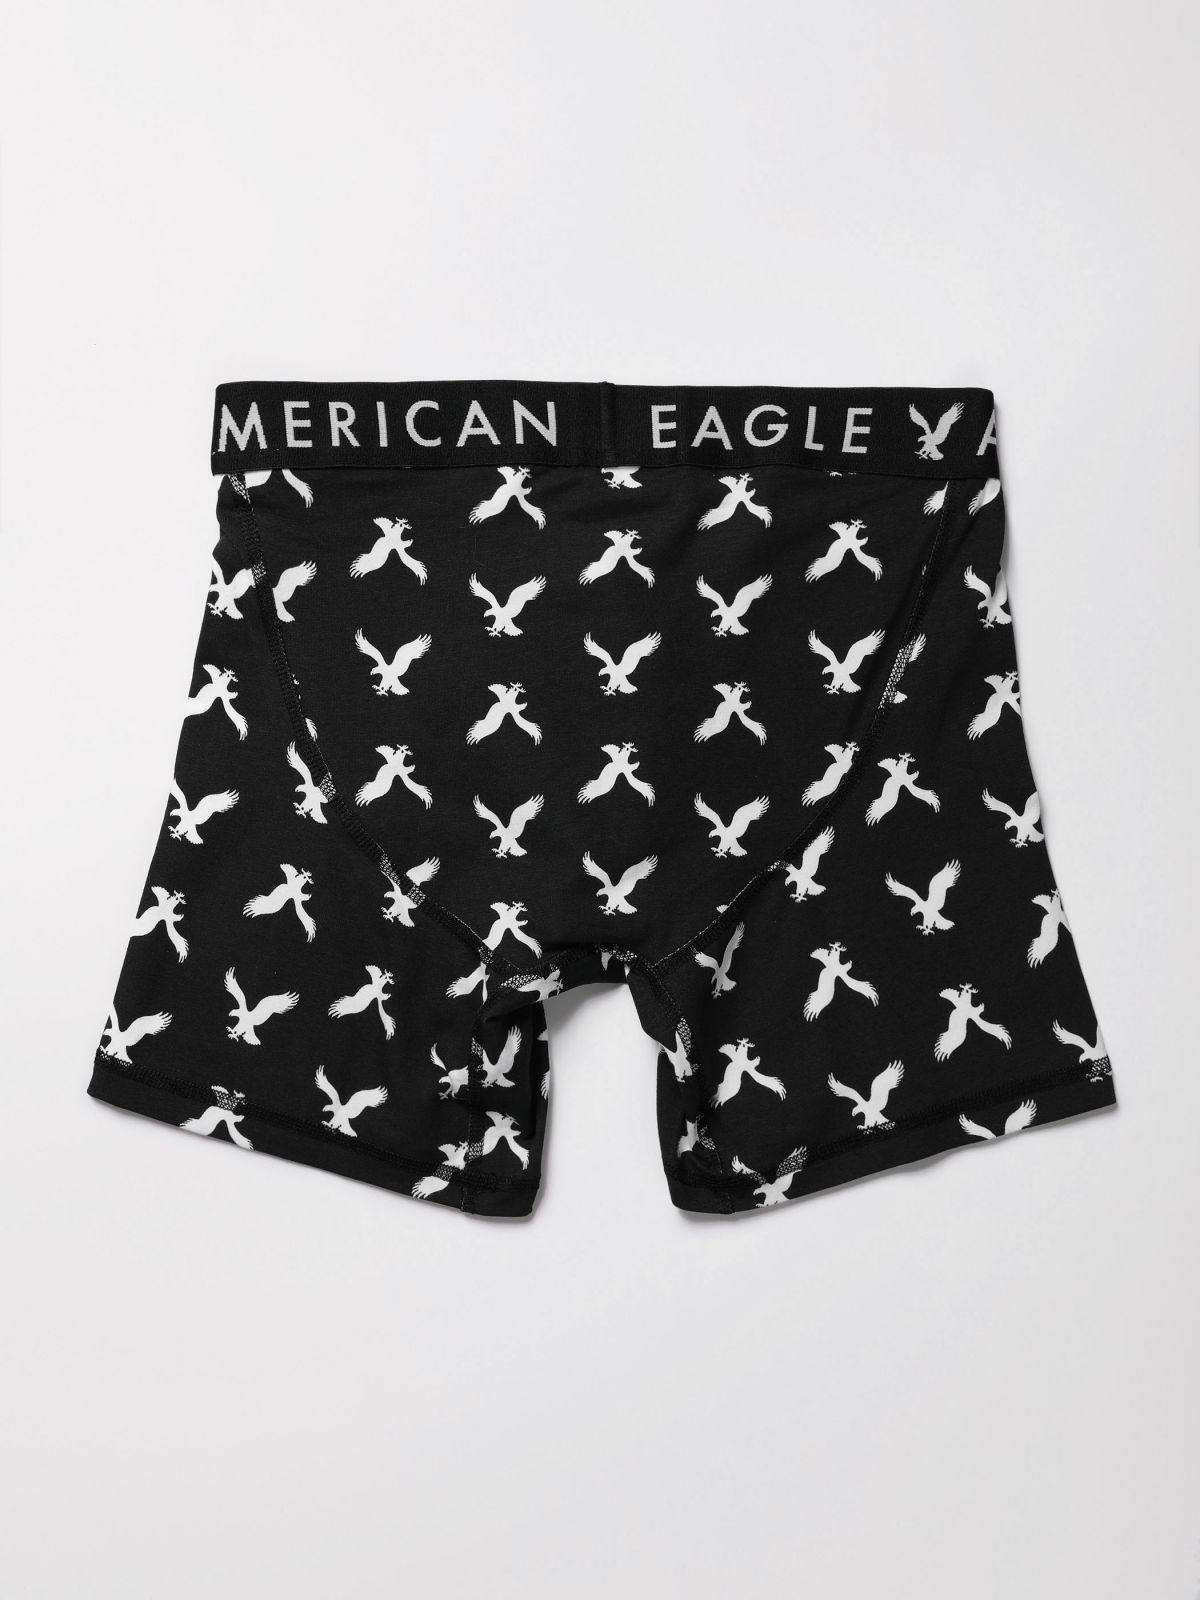  תחתוני בוקסר לונגליין בהדפס לוגו / גברים של AMERICAN EAGLE